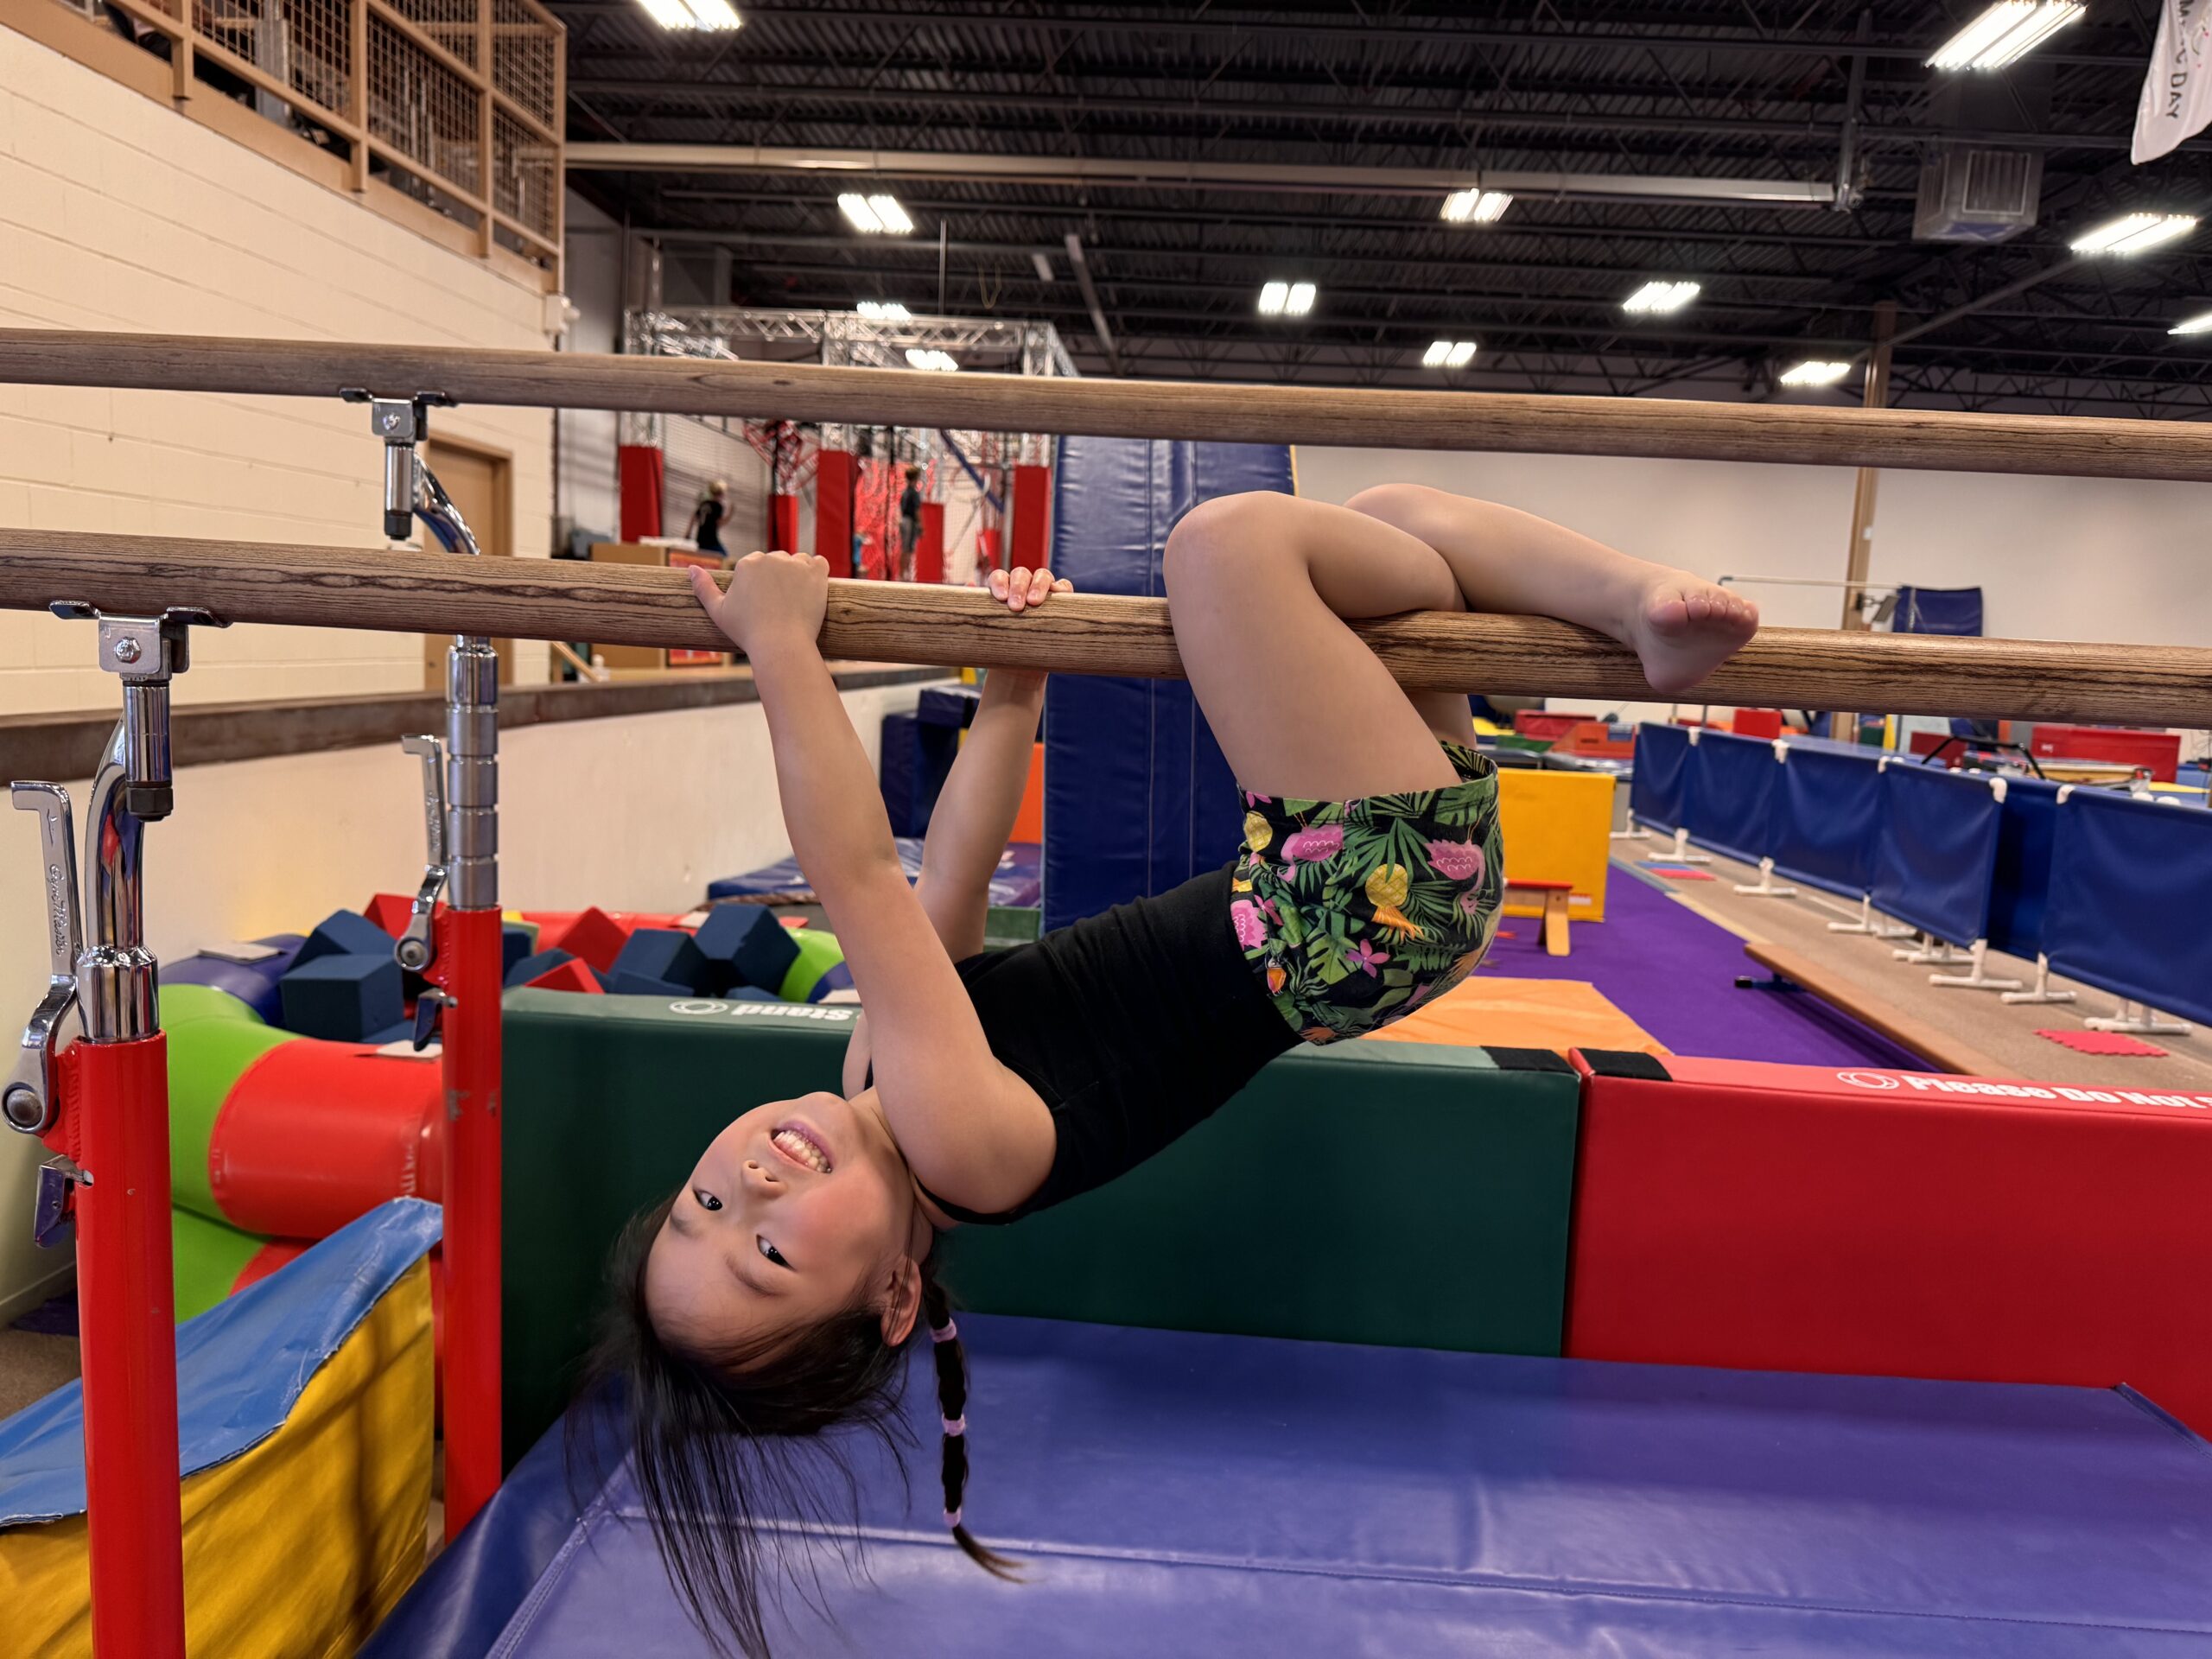 young girl hanging on gymnastics bars